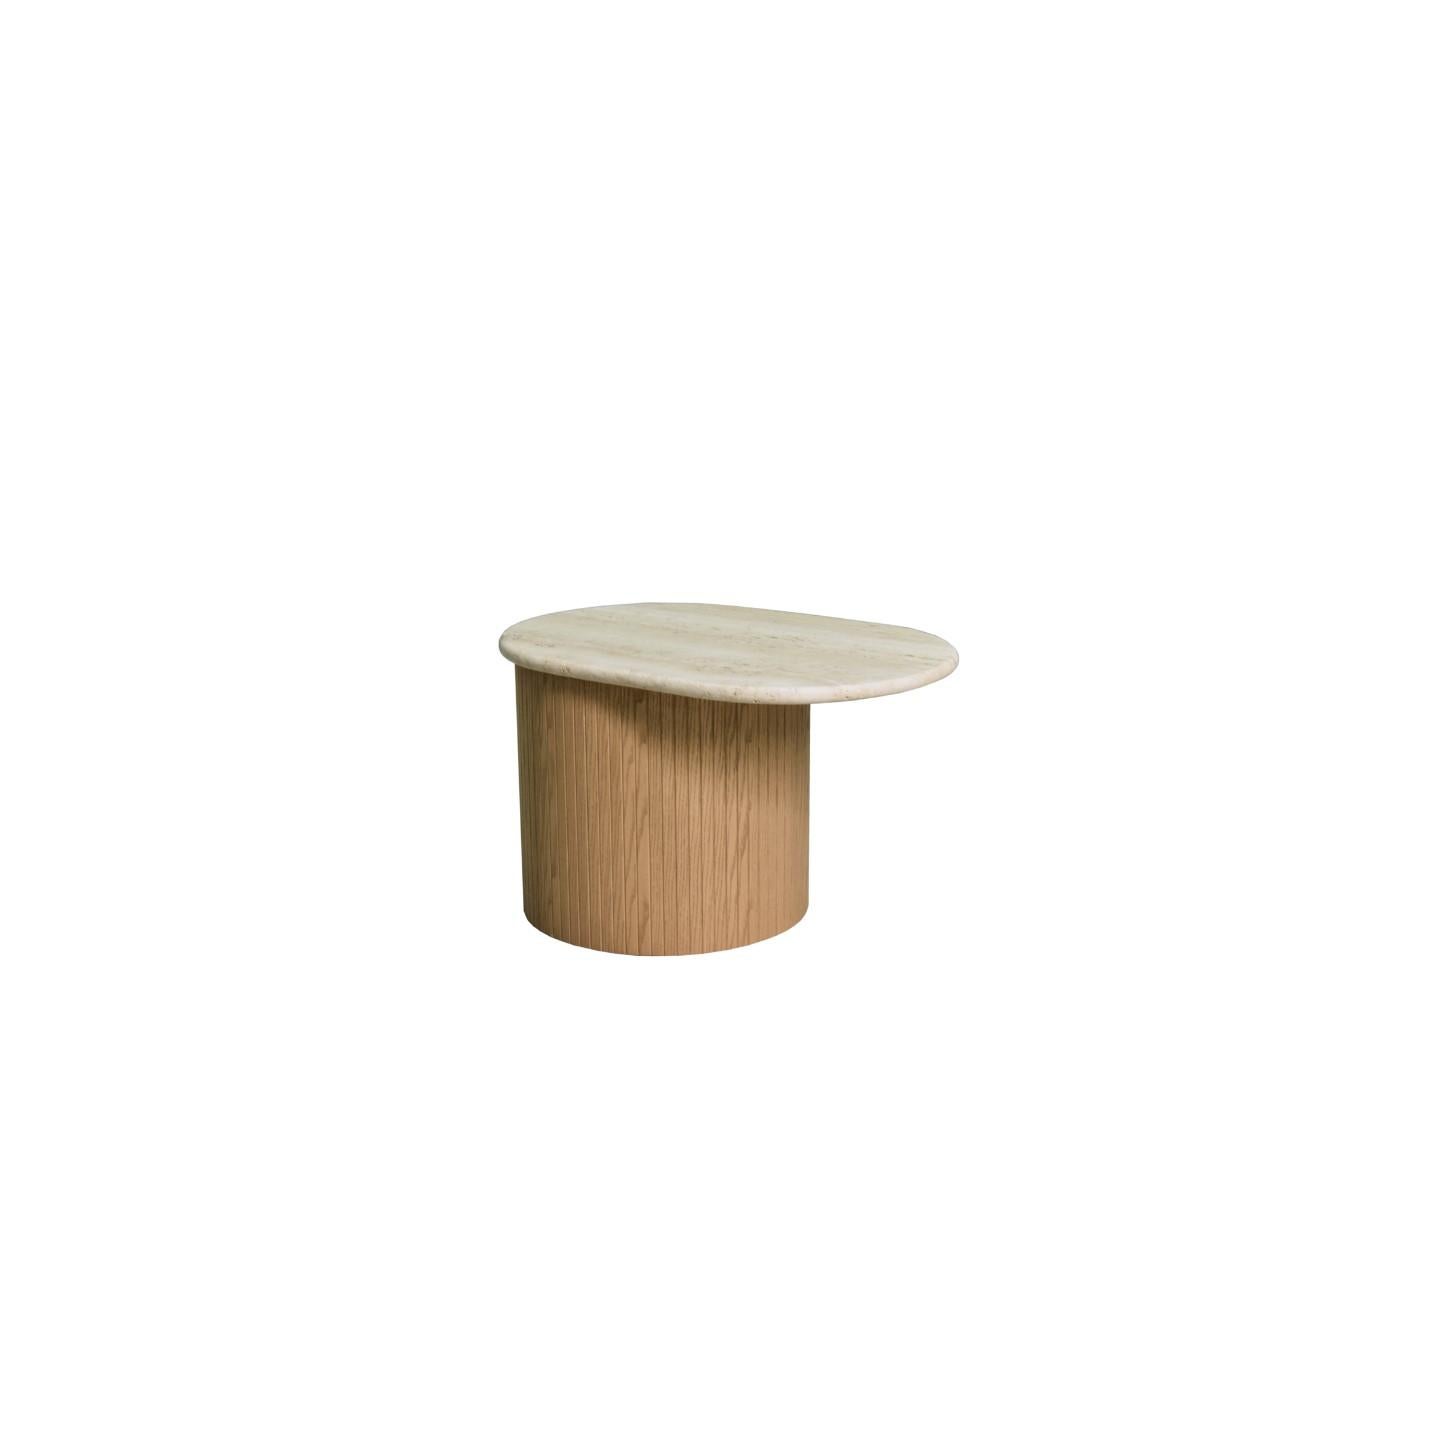 Kleine Tische mit runder Basis aus Lattenholz und Platte aus Travertinmarmor.
Erhältlich in zwei Höhen, die aneinander angepasst werden können. 
verfügbare Steine
Emperador dunkel
Sahara Noir
Pulpis braun
Weißer Calacatta.


 